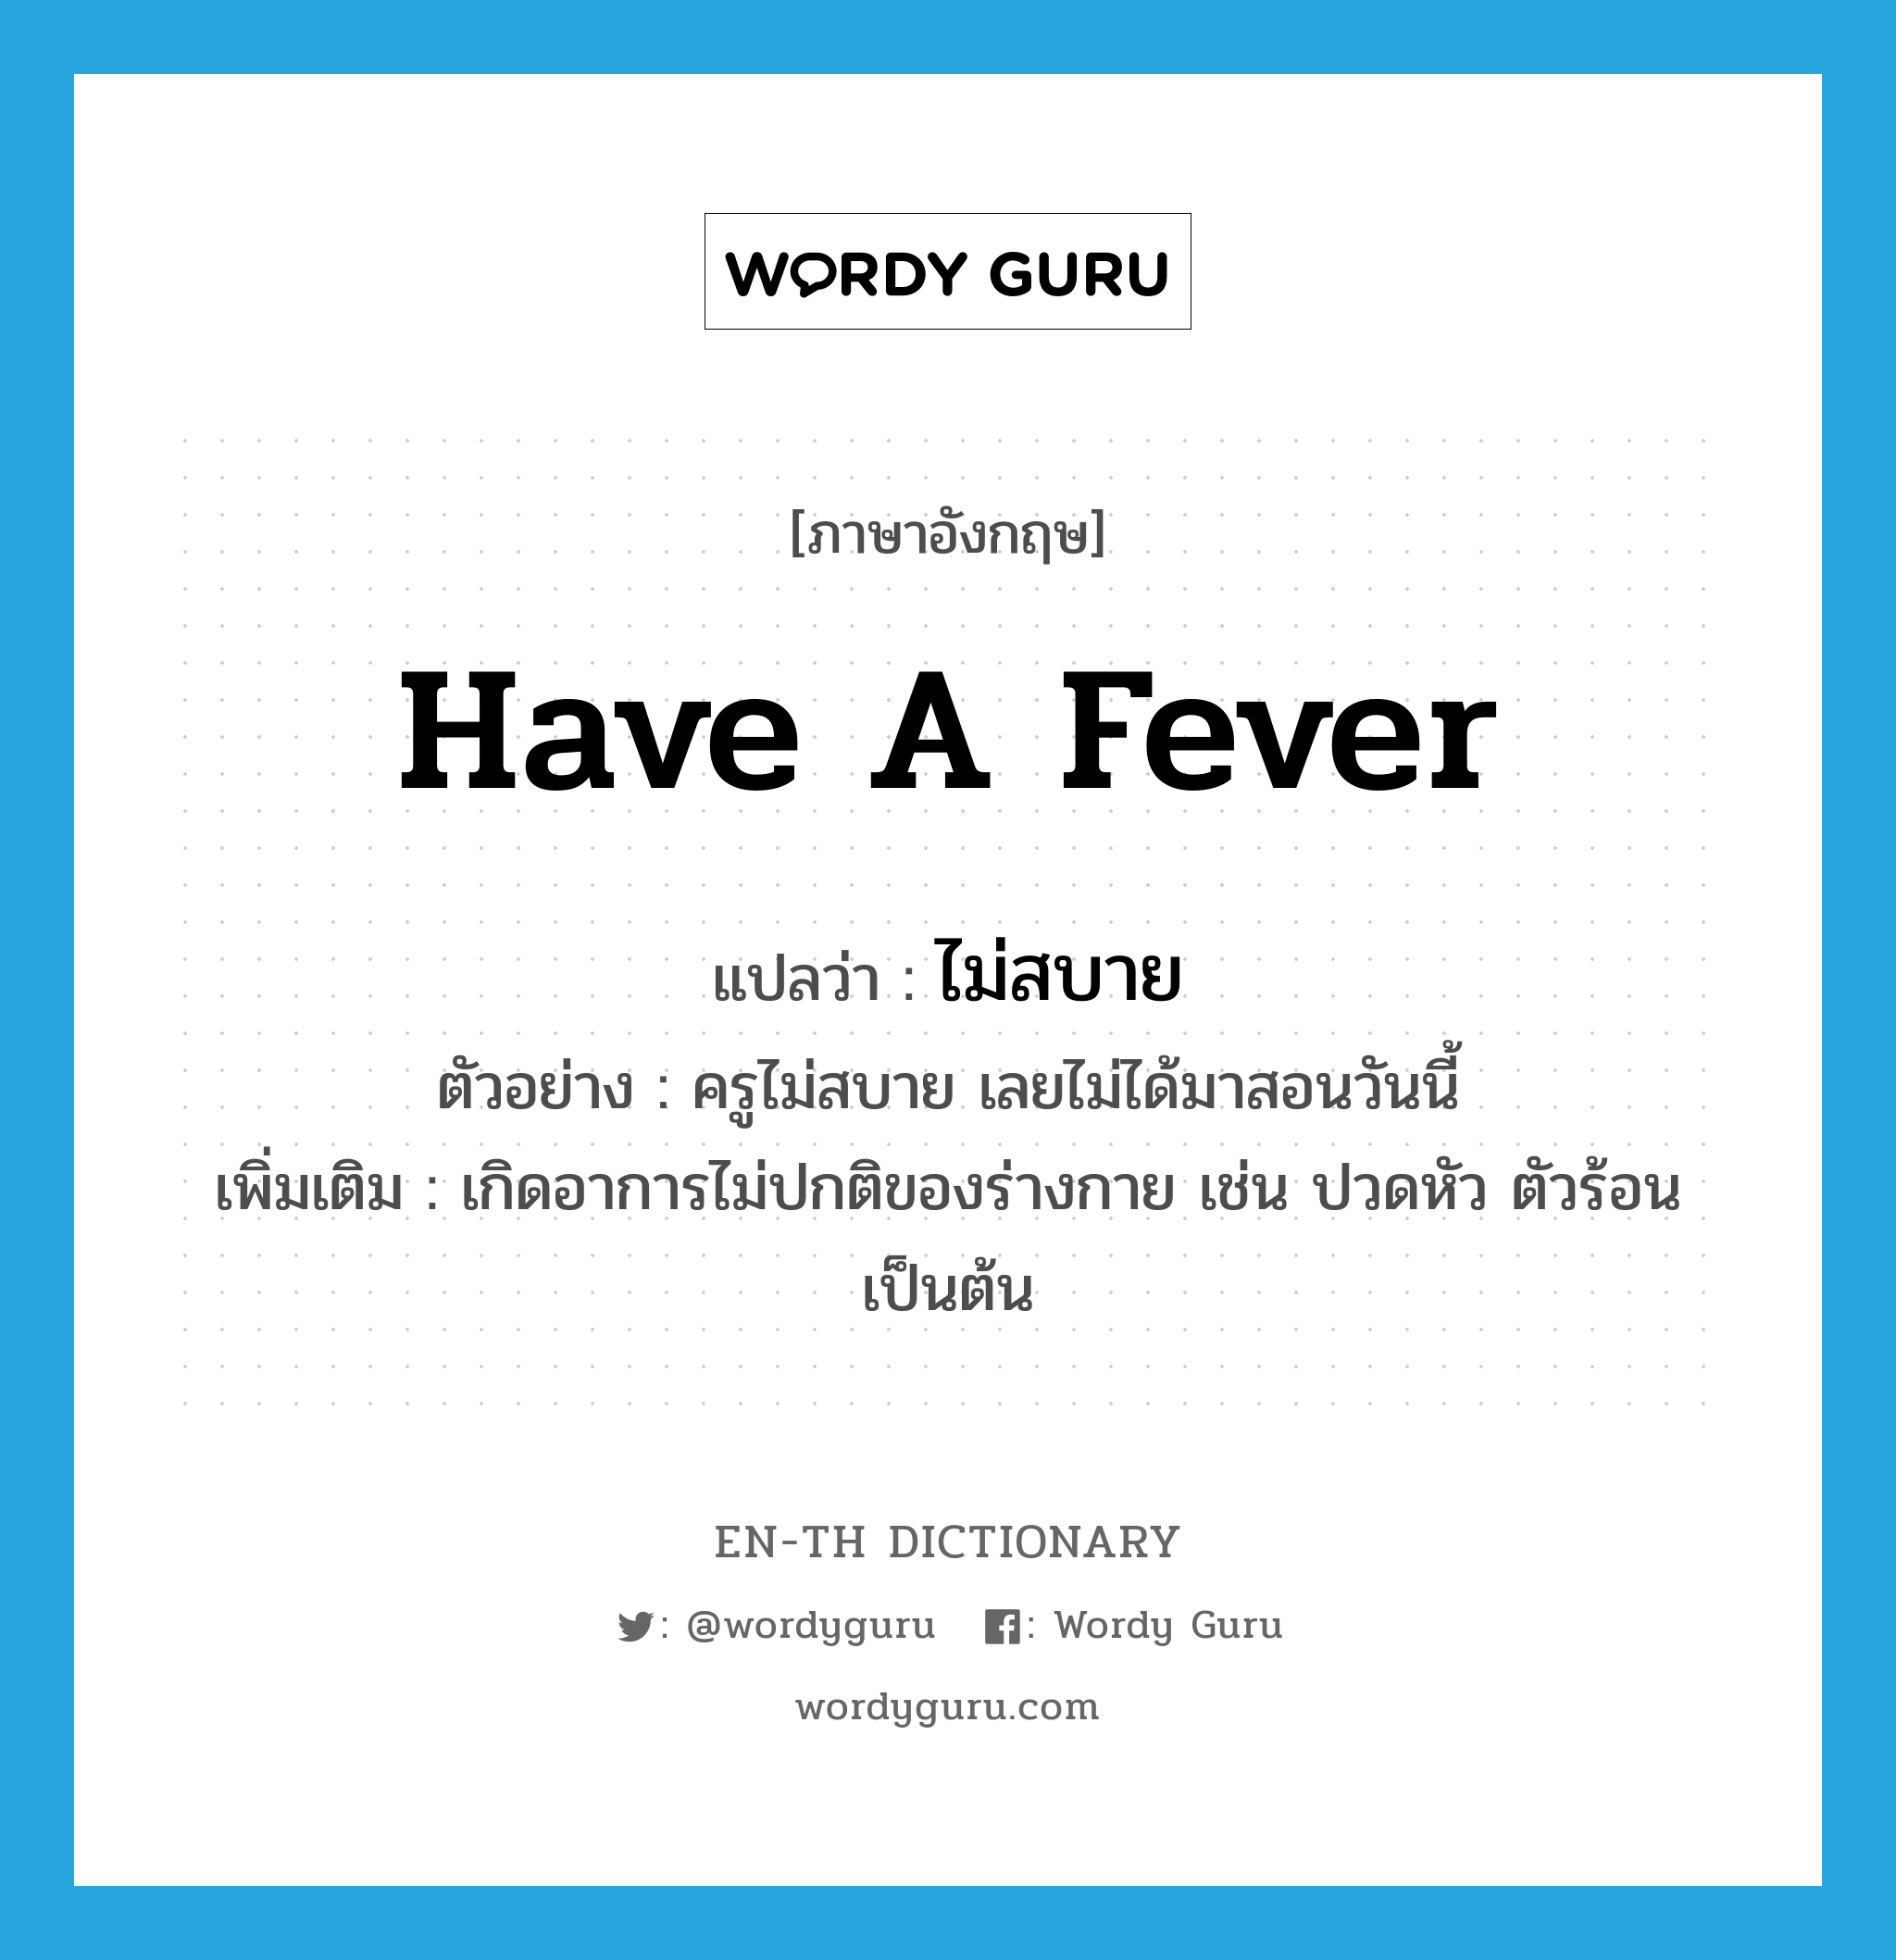 have a fever แปลว่า?, คำศัพท์ภาษาอังกฤษ have a fever แปลว่า ไม่สบาย ประเภท V ตัวอย่าง ครูไม่สบาย เลยไม่ได้มาสอนวันนี้ เพิ่มเติม เกิดอาการไม่ปกติของร่างกาย เช่น ปวดหัว ตัวร้อน เป็นต้น หมวด V